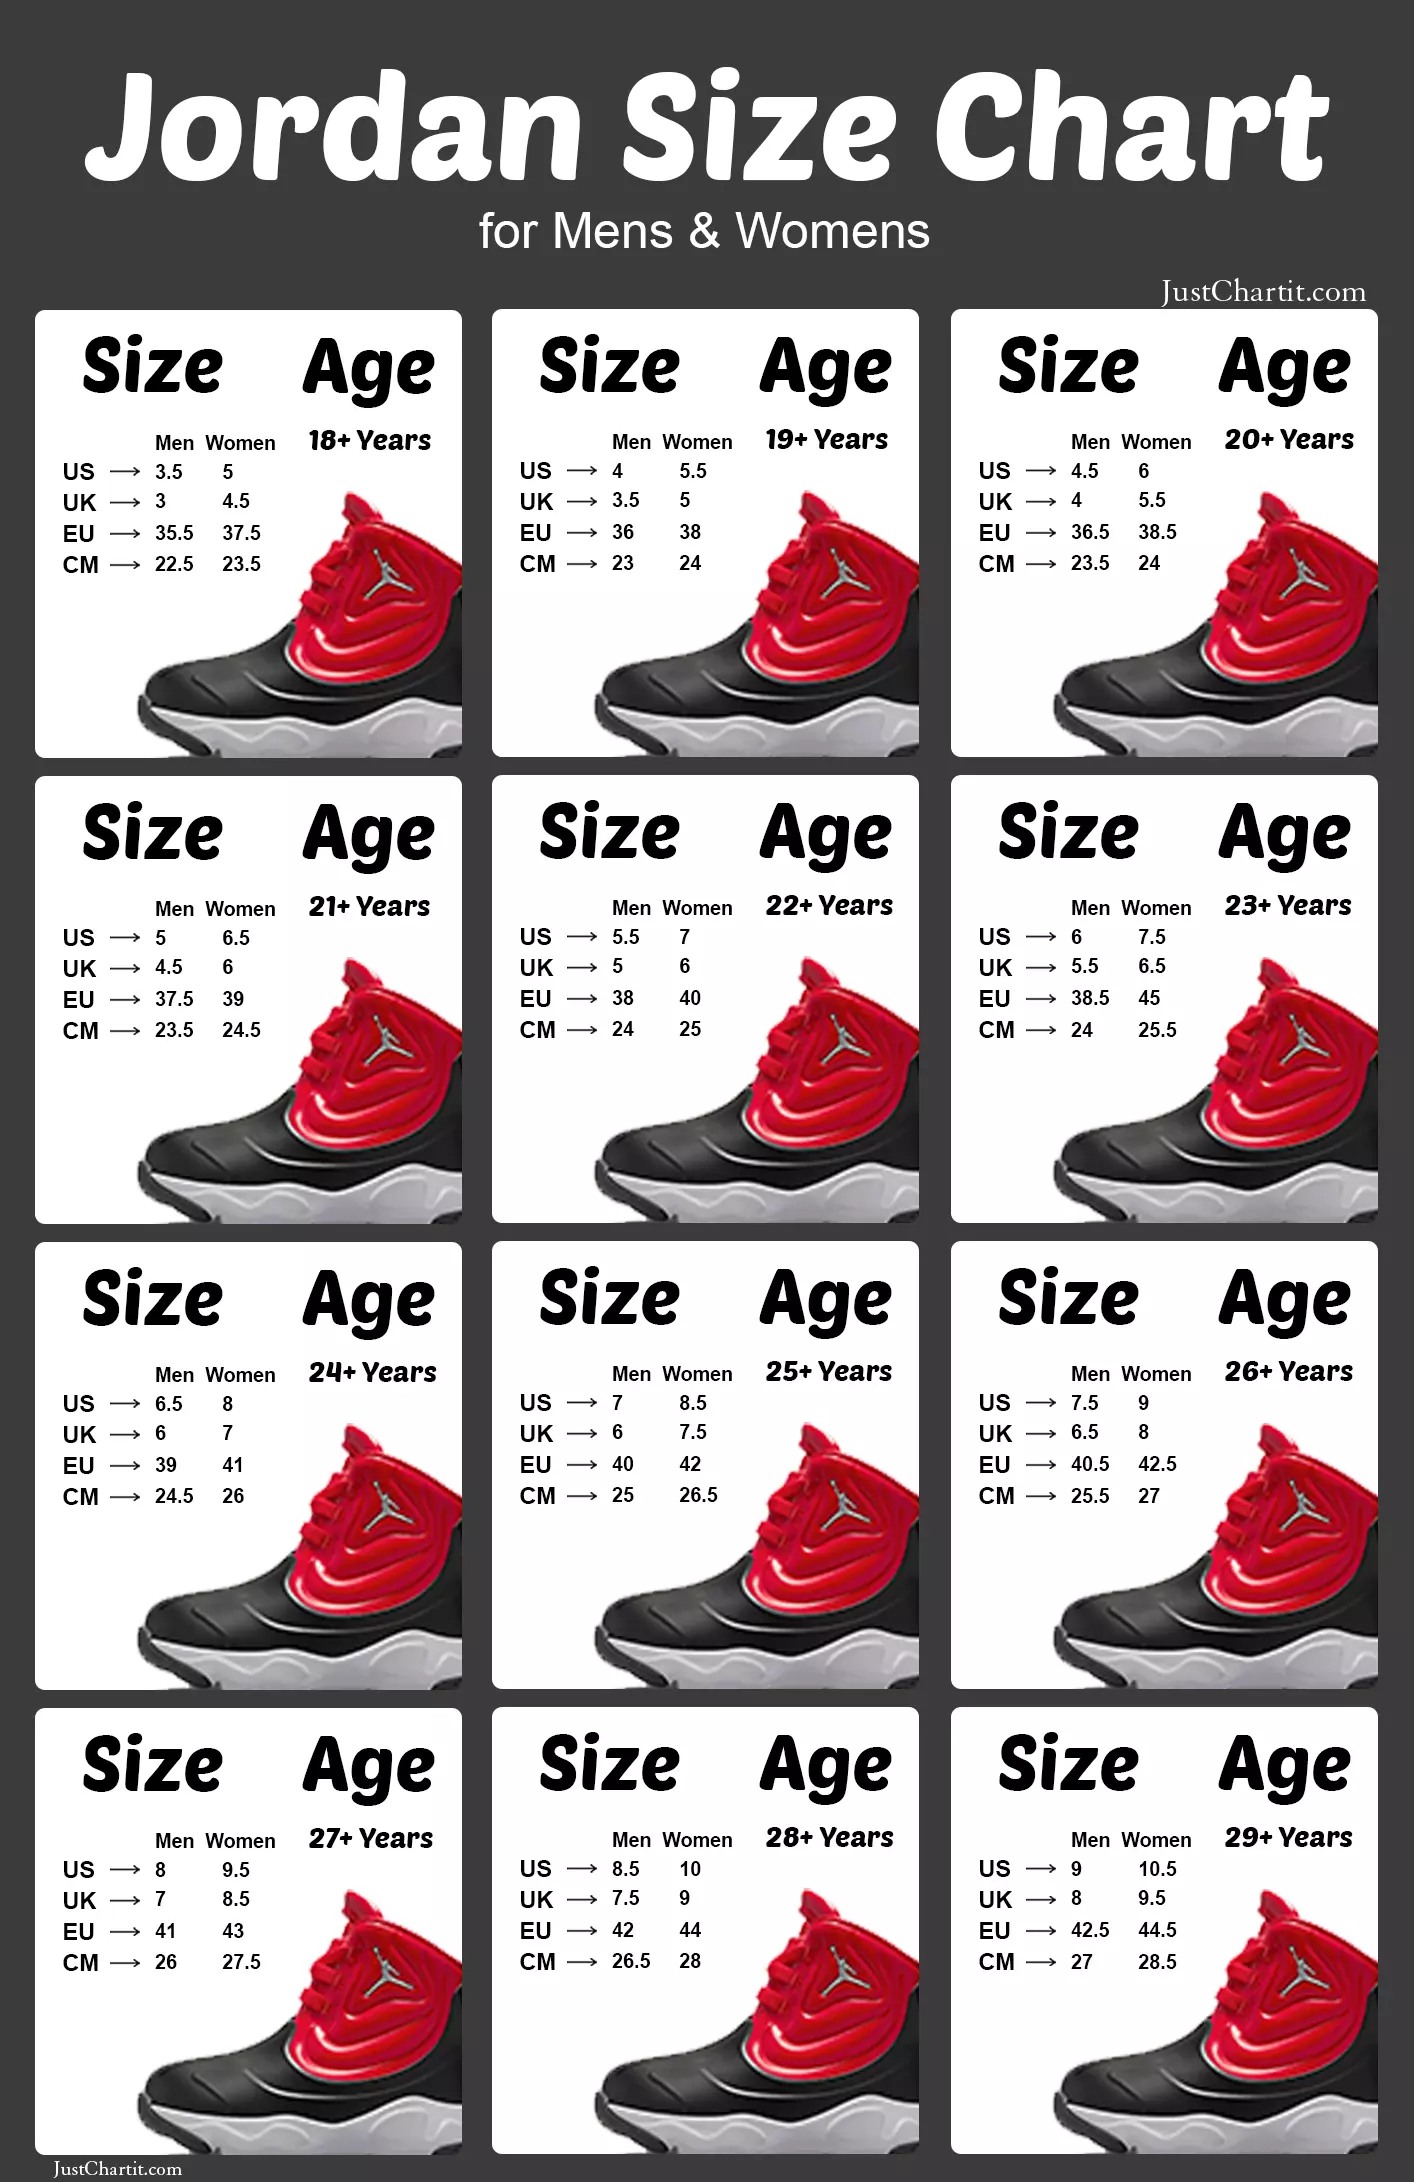 slice farm Digital Jordan Size Chart - Men & Women Size Guide